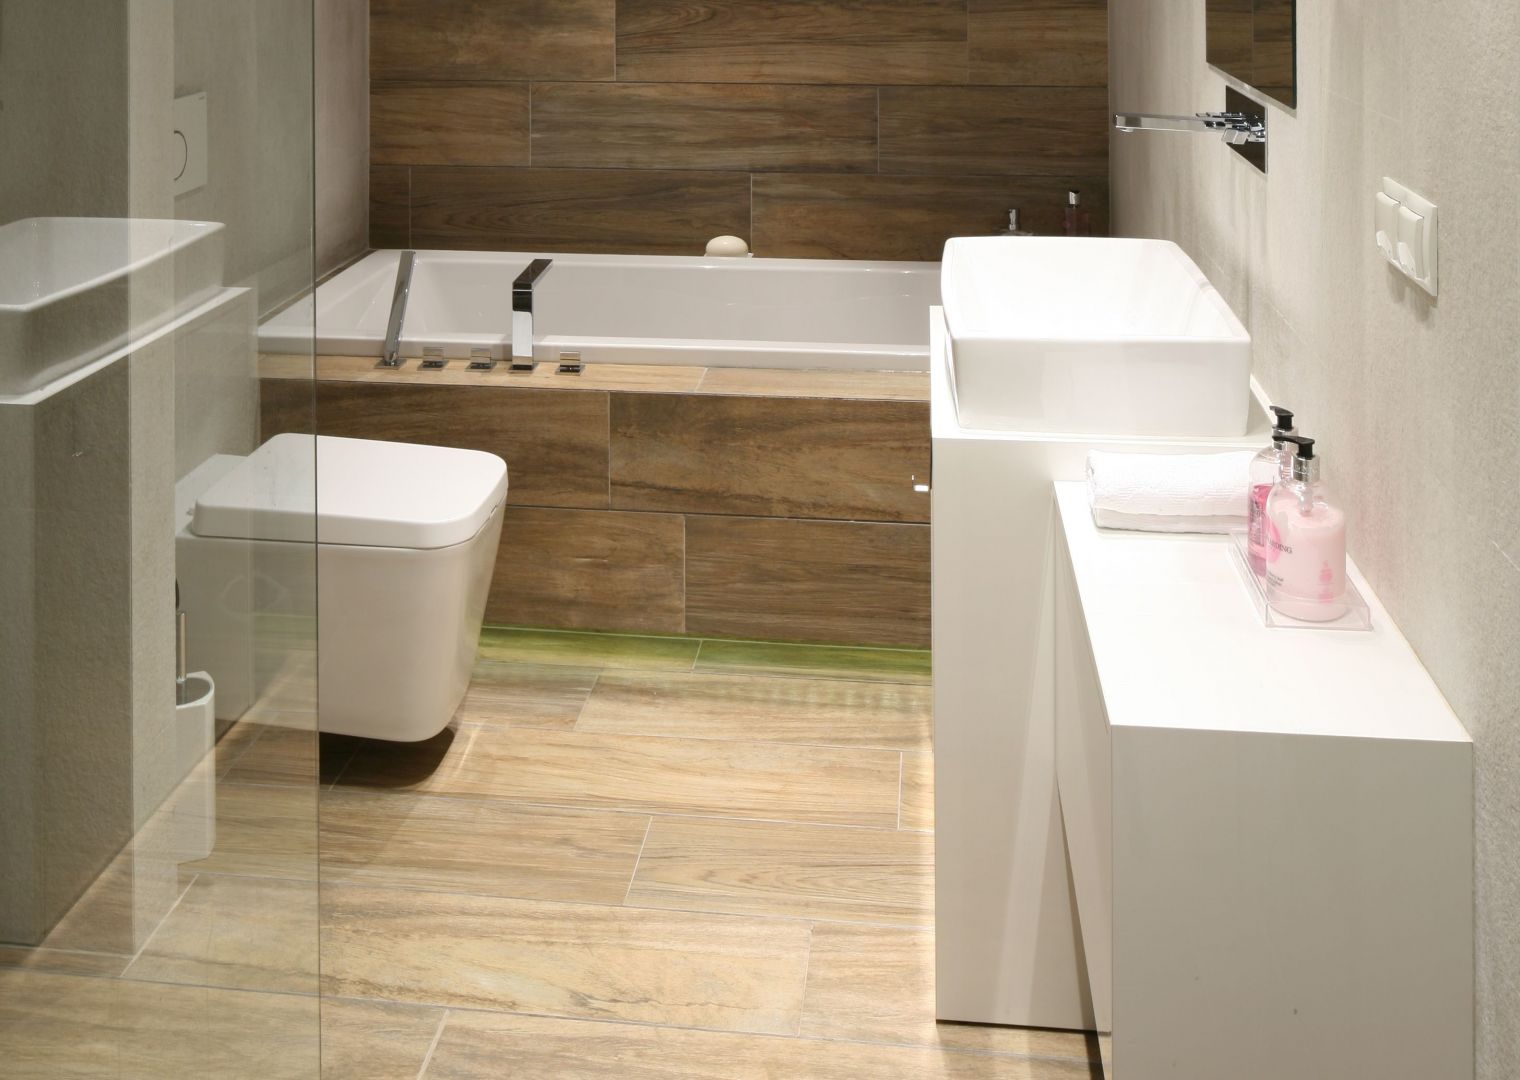 Płytki imitujące drewno są świetnym rozwiązaniem jeśli chcemy aby wnętrze łazienki wyglądało naturalnie i świeżo. Projekt Dominik Respondek. Fot. Bartosz Jarosz